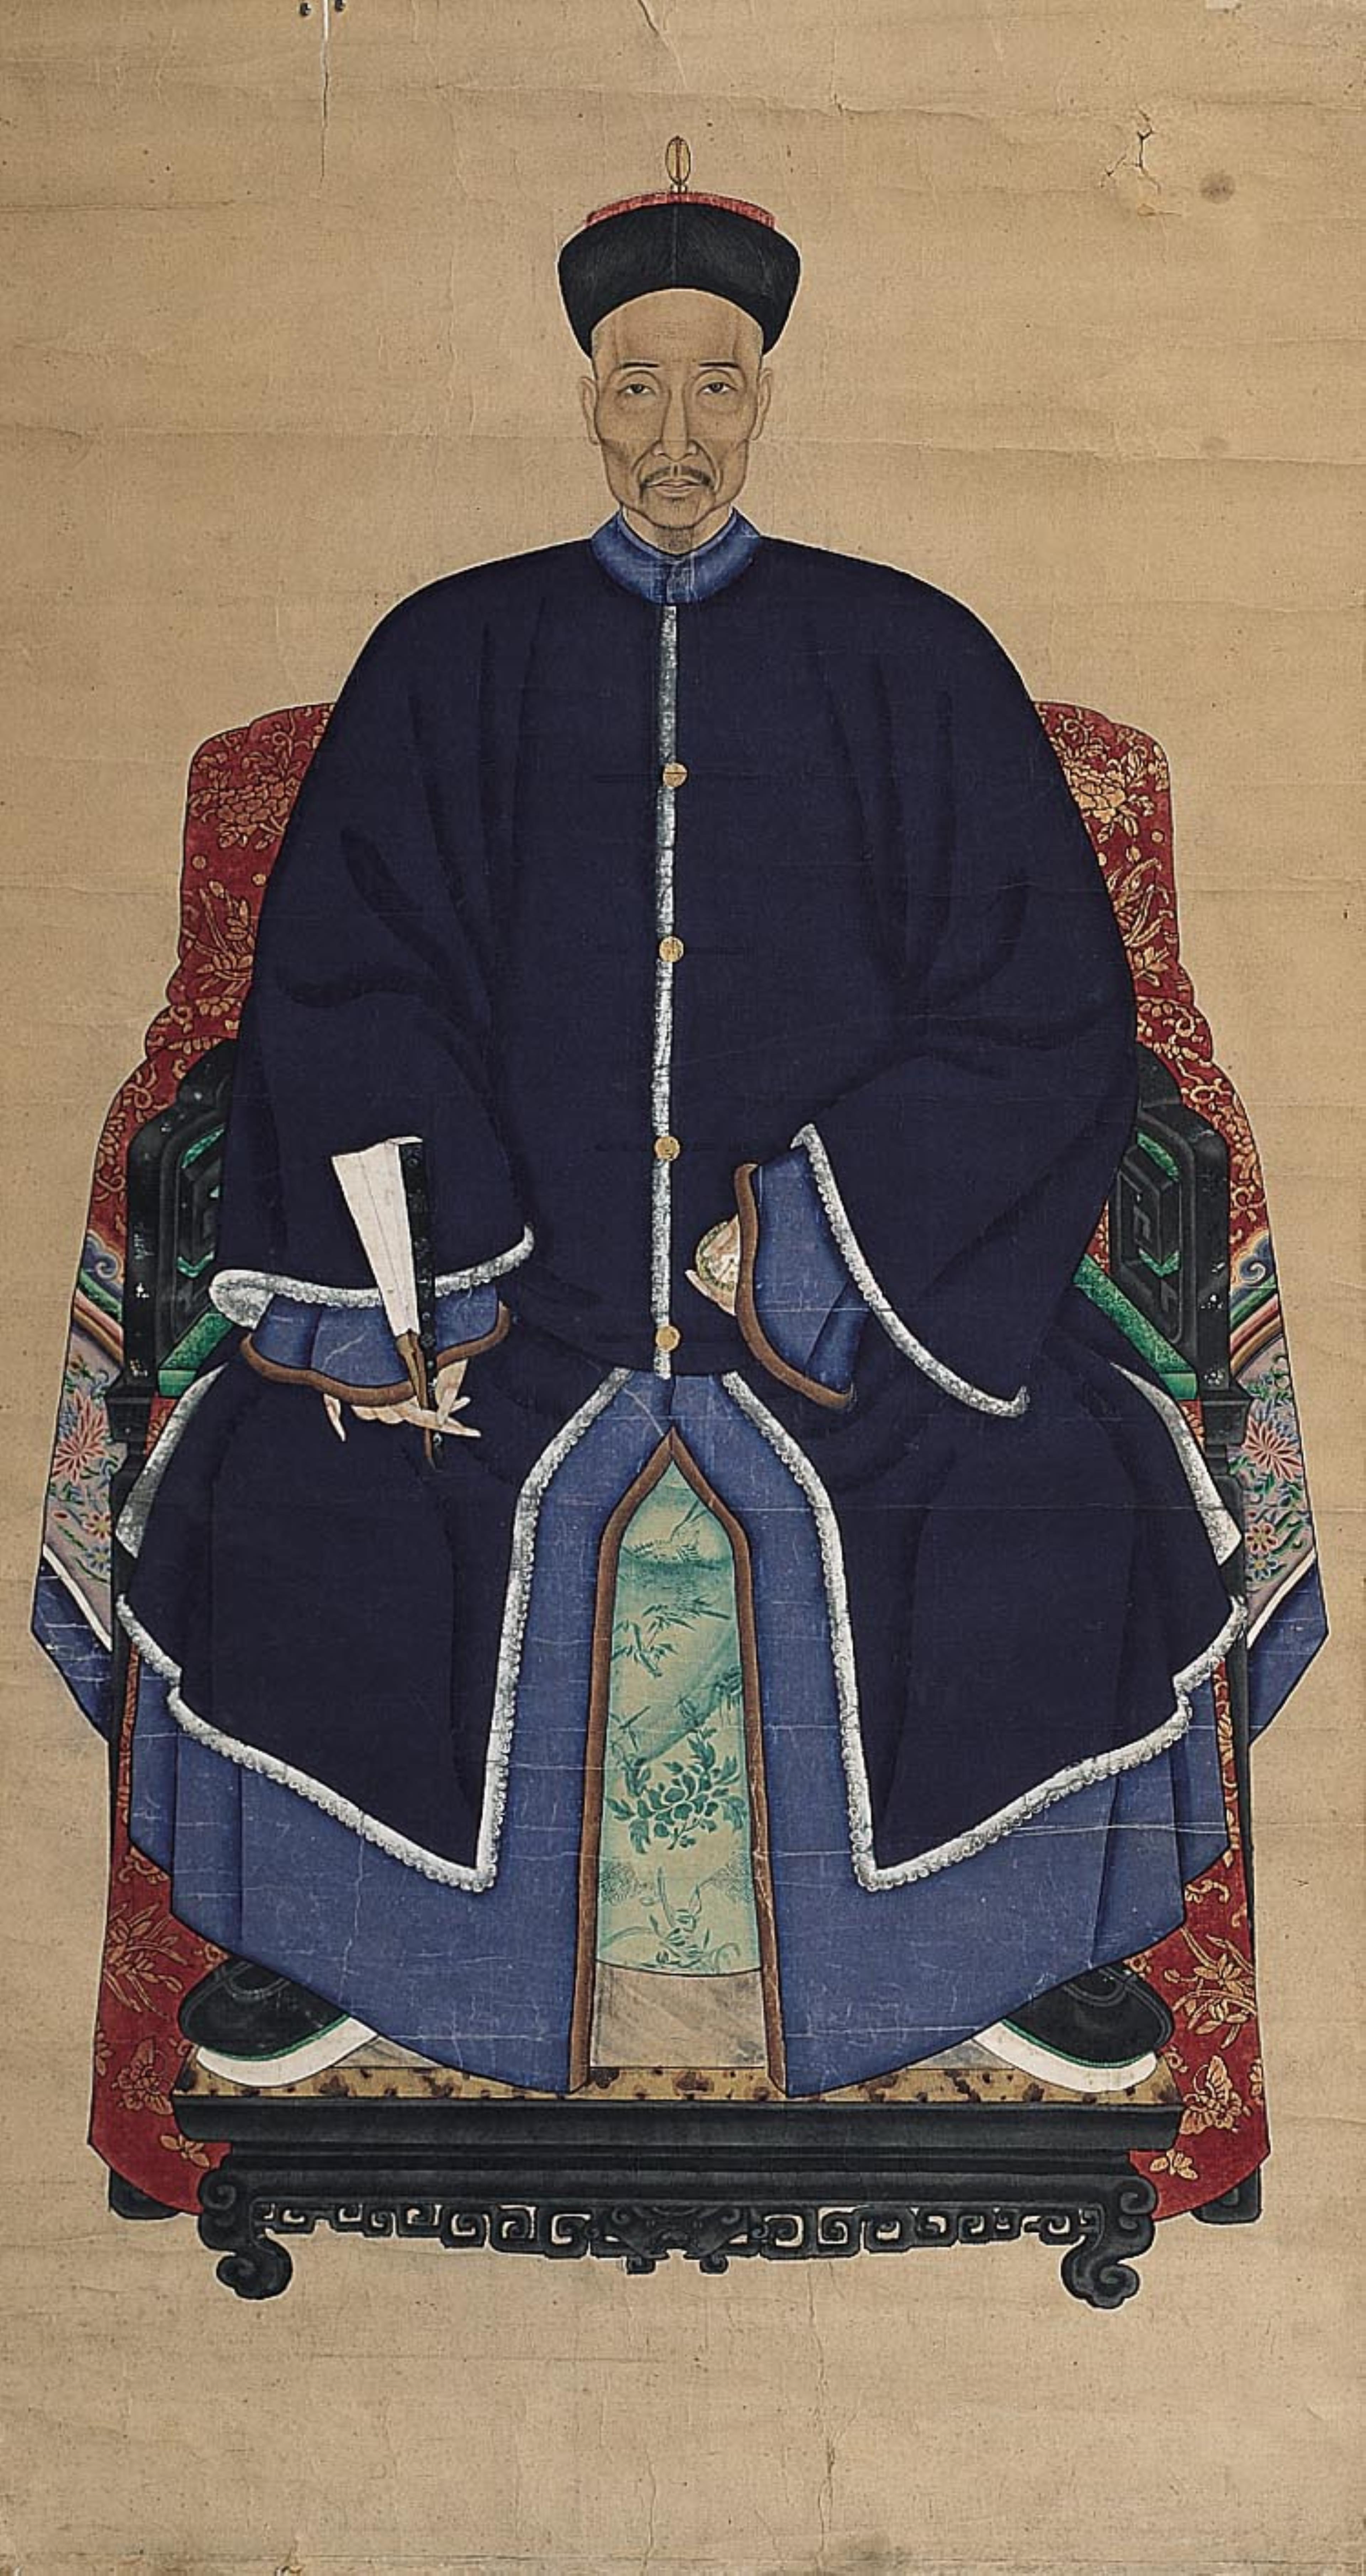 彩繪坐姿官服男祖先畫像 (共1張)